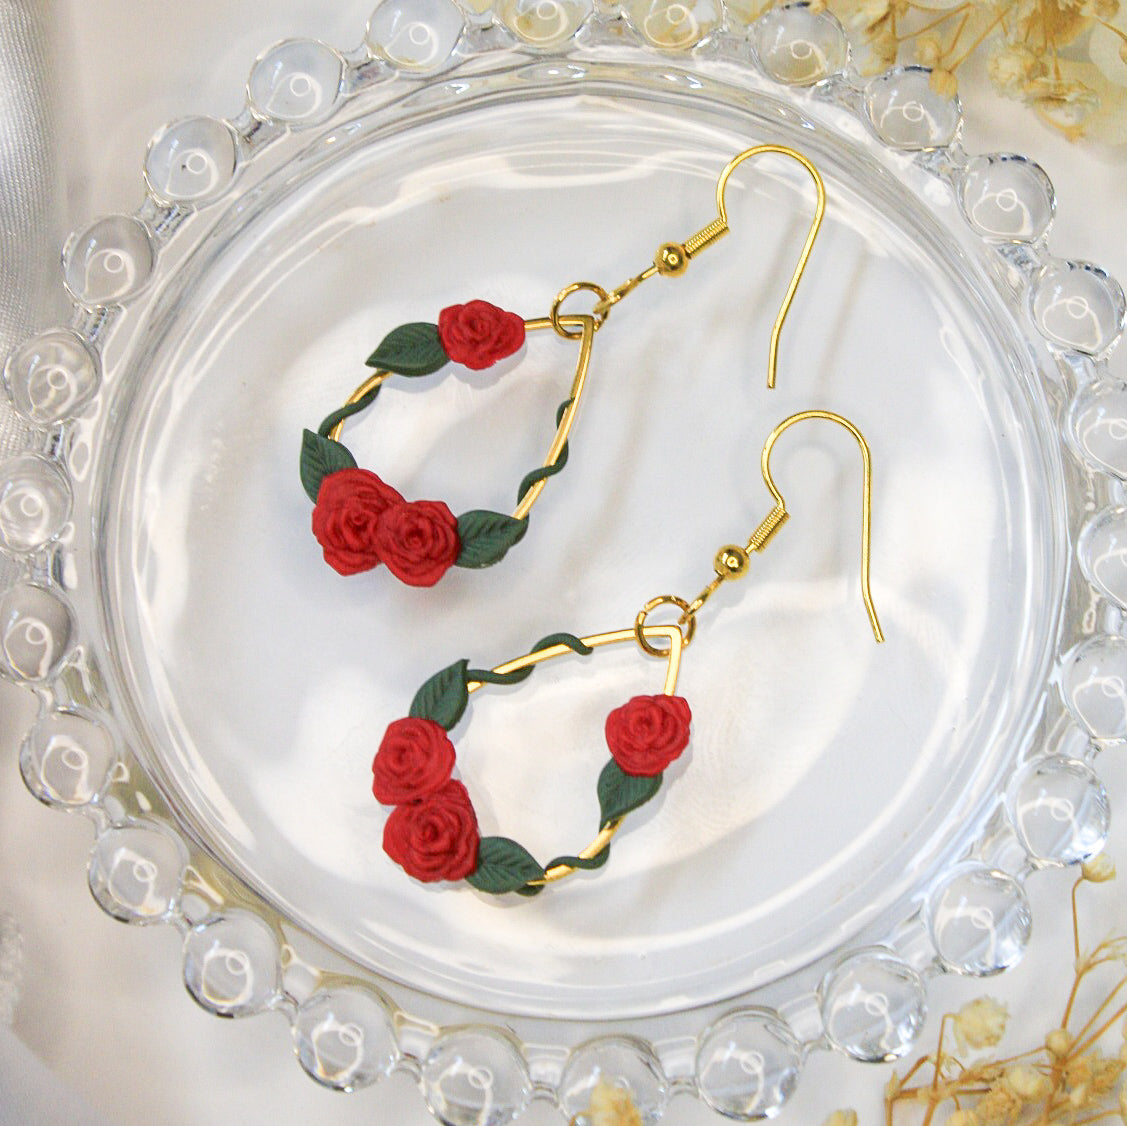 Gold rose Earrings NZ | Handmade flower earrings for sensitive ears